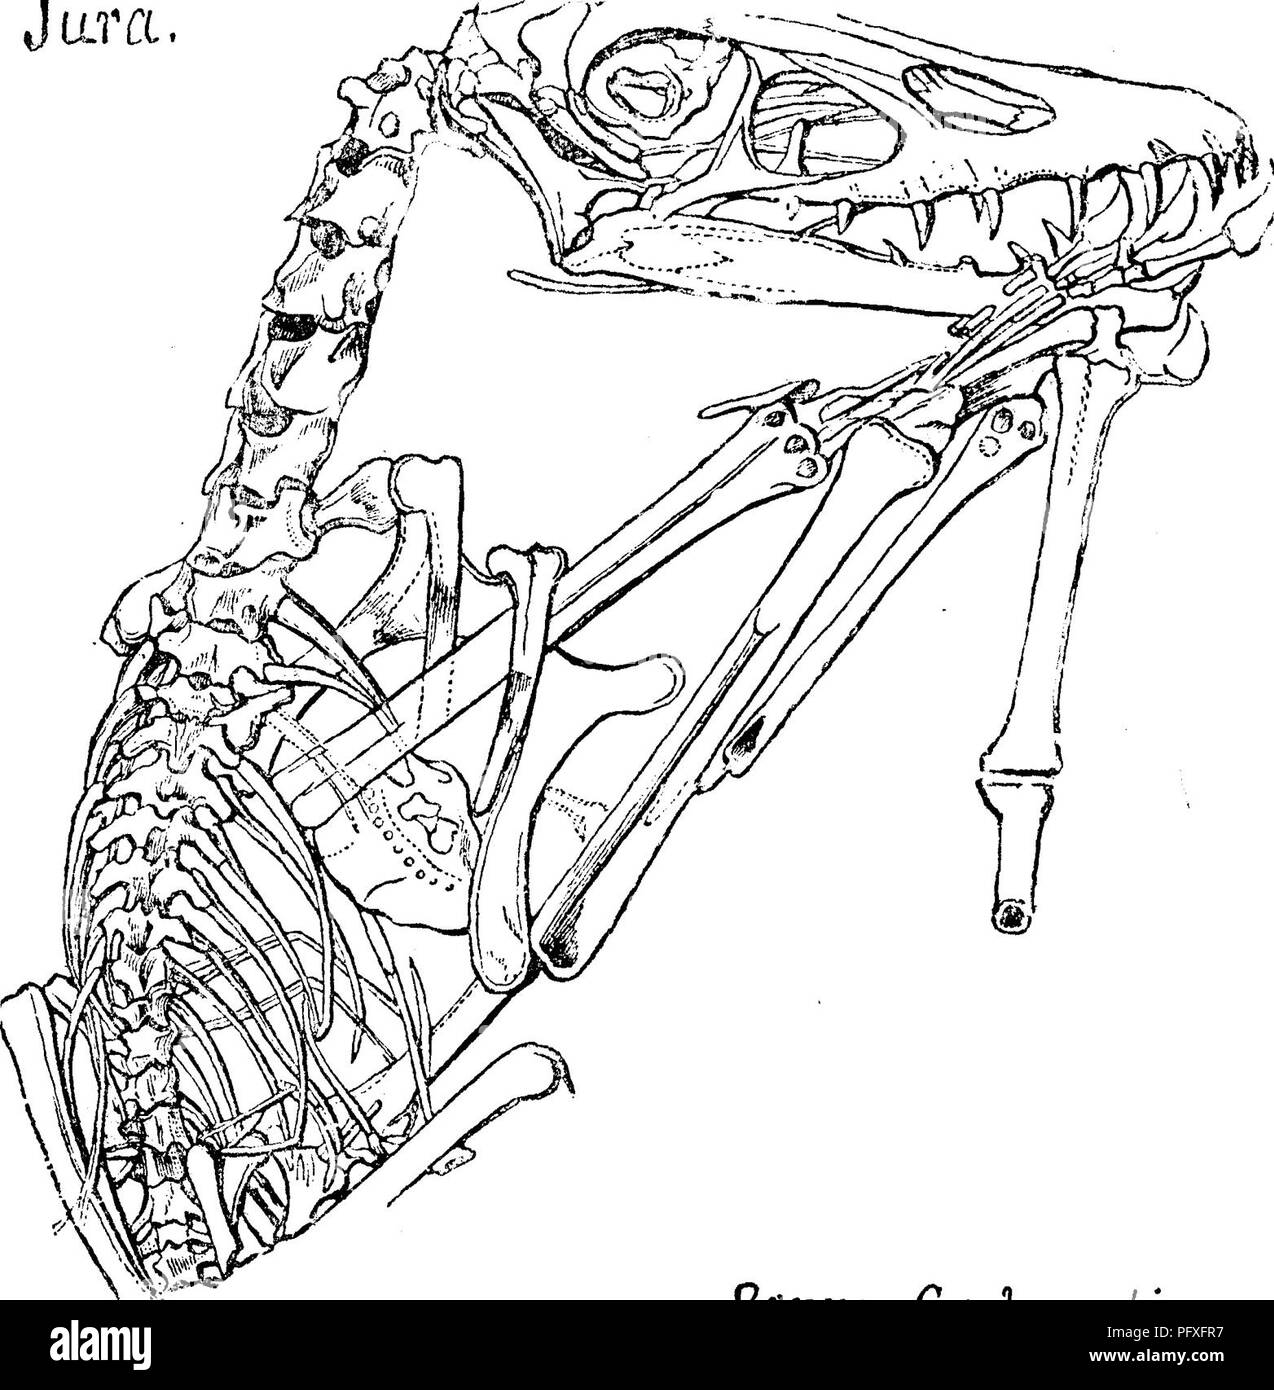 . Un dictionnaire des fossiles de la Pennsylvanie et les états voisins nommés dans les rapports et les catalogues de l'enquête ... La paléontologie. Ptero. 814 apodinae Pterodactylus, Goldfuss. Une autre espèce d'un jar. ^^'. de flying lizard trouvés à Solenhofen en Allemagne au milieu du Jurassique, Pterodactylus- dle longirostris. Le modèle de liz vol- ard trouvés à Solenhofen qui plus clairement affichées à l'ana- tomy du bat-comme structure de l'aile, l'oiseau-comme le cou et la tête, et le lézard dents de cette famille. En Pennsylva- nia nous ont peut-être des strates d'âge jurassique moyen ; mais si oui, non e Banque D'Images